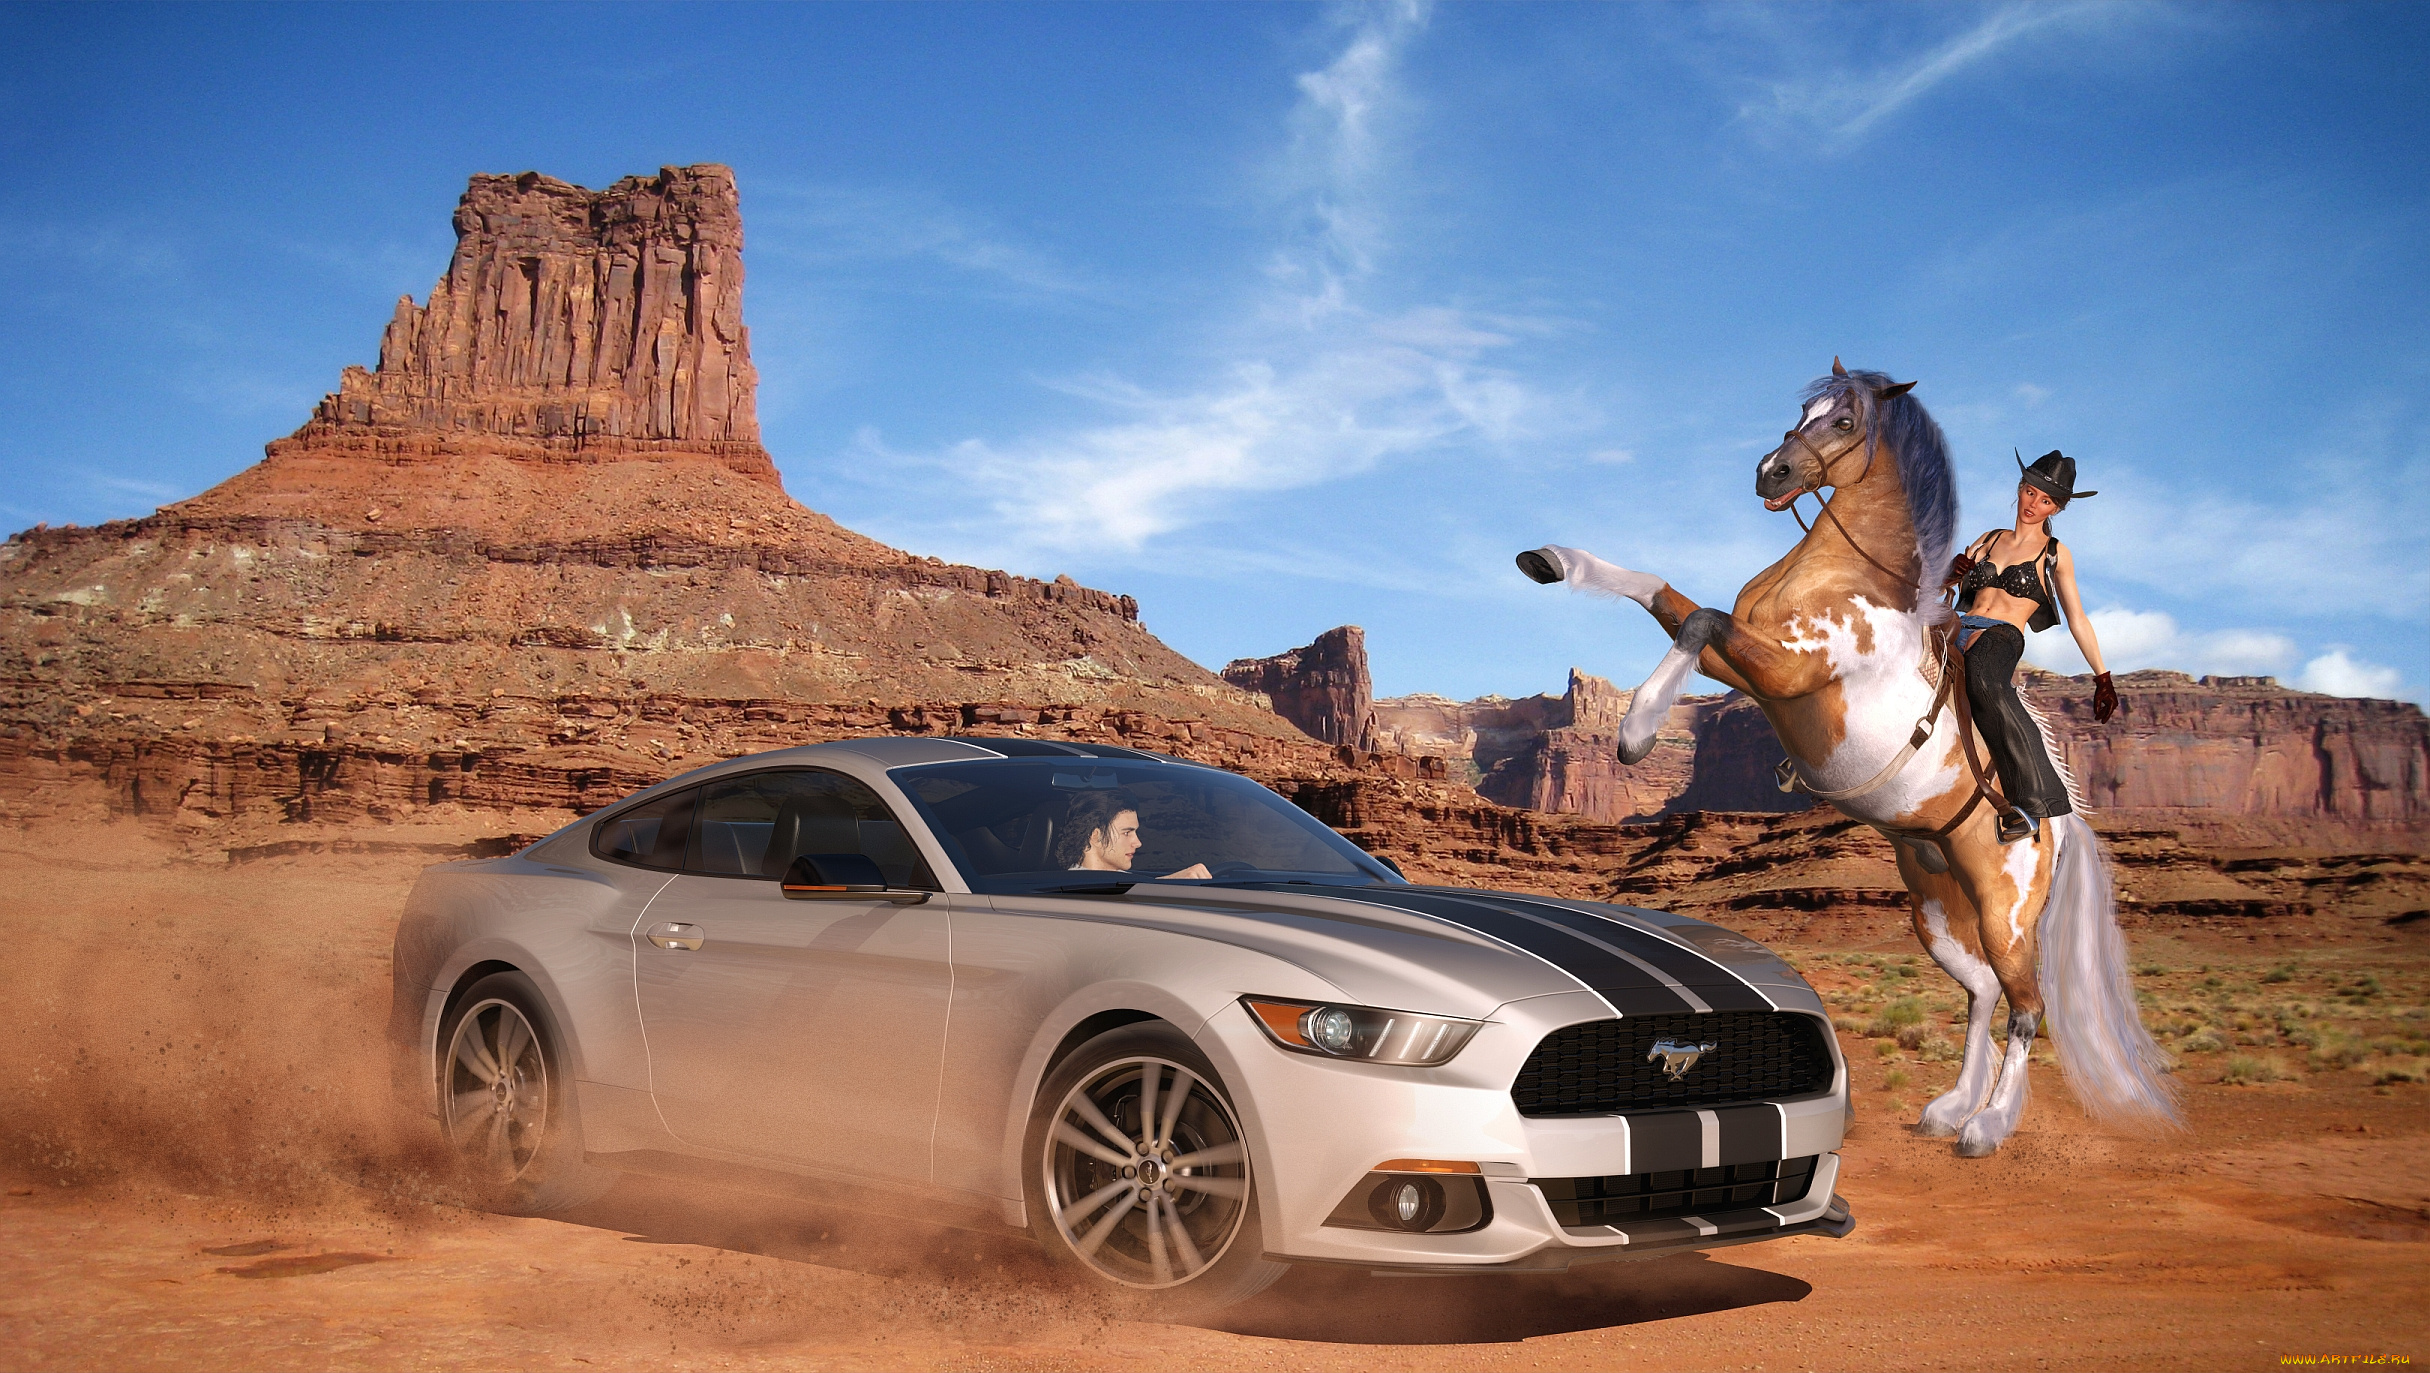 Машина с бегущей лошадью. Форд Мустанг и лошадь Мустанг. Машина в пустыне. Мустанг в пустыне.